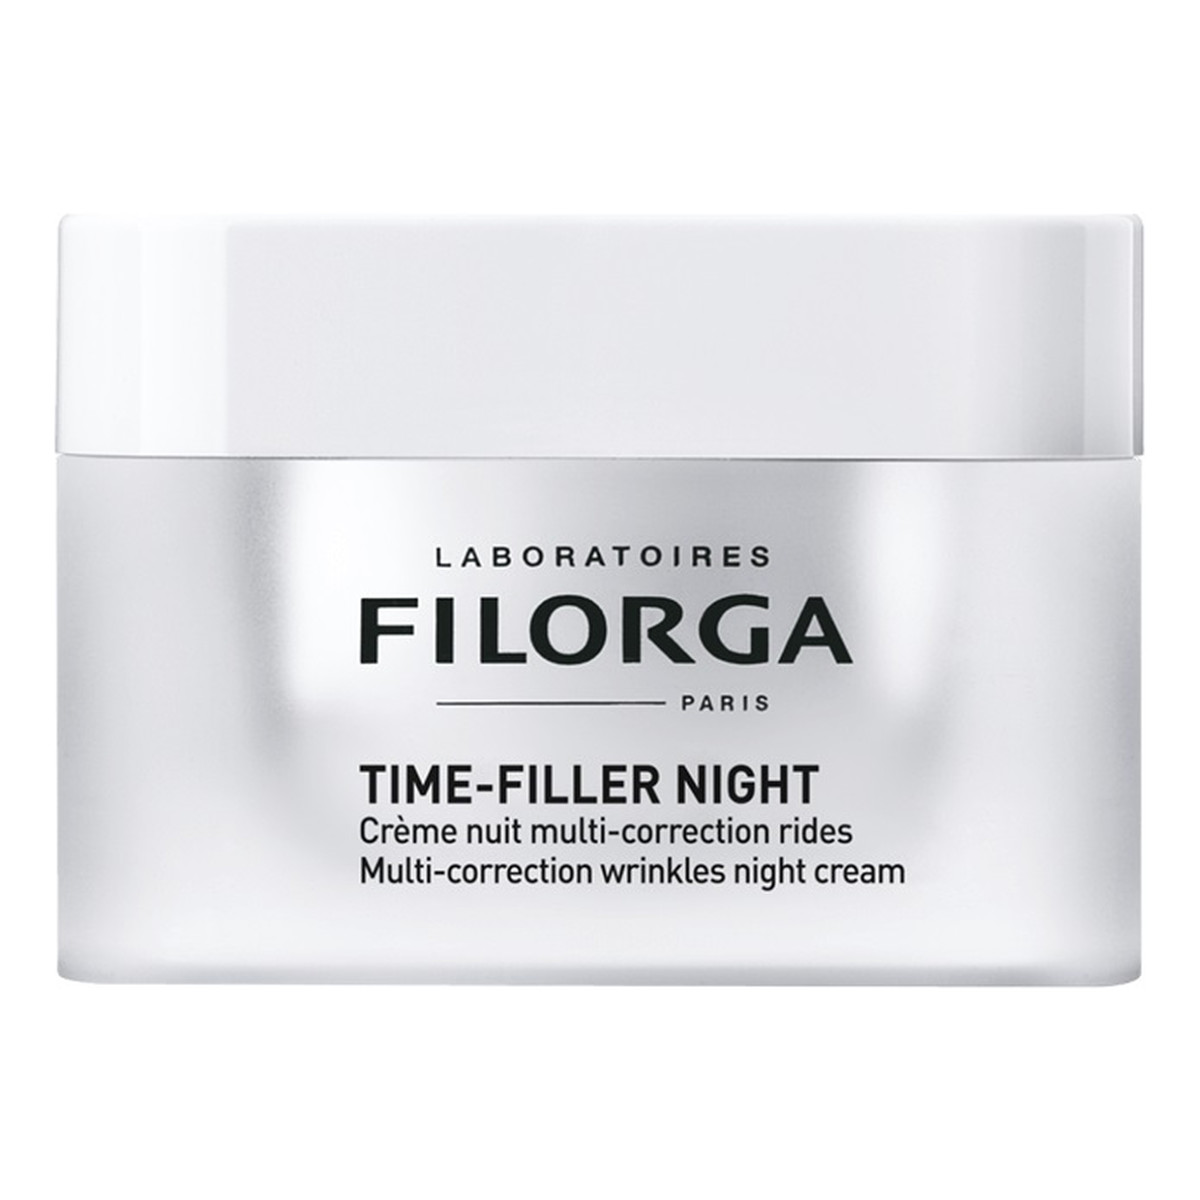 Filorga Time-Filler Night Multi-Correction Wrinkles Cream kompleksowy krem przeciwzmarszczkowy na noc 50ml